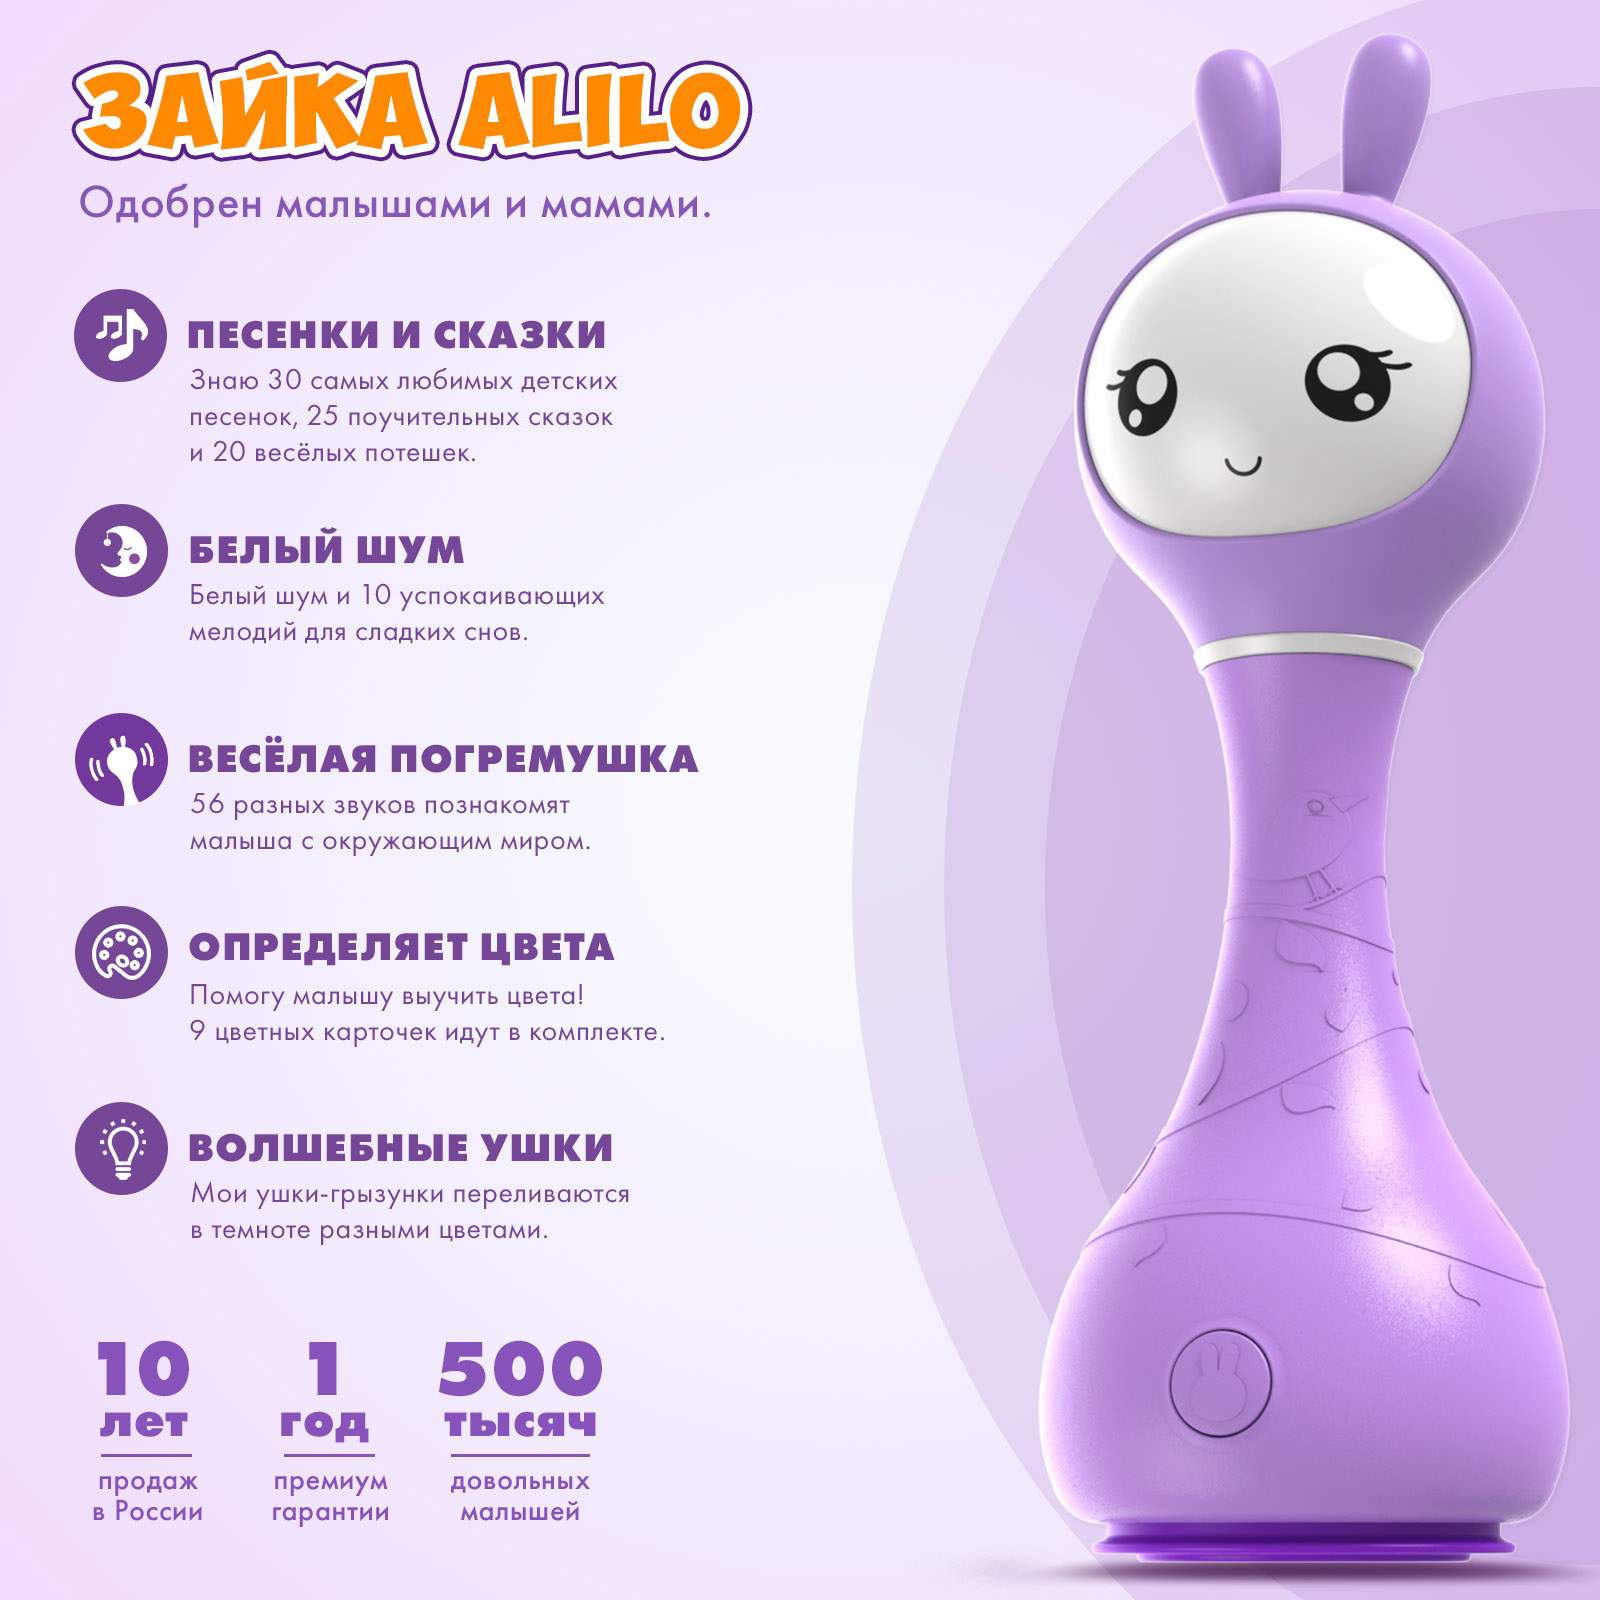 Интерактивная музыкальная игрушка Умный Зайка alilo R1 распознавание цветов - купить в ООО «Бэйби Опт Груп» (со склада СберМегаМаркет), цена на Мегамаркет